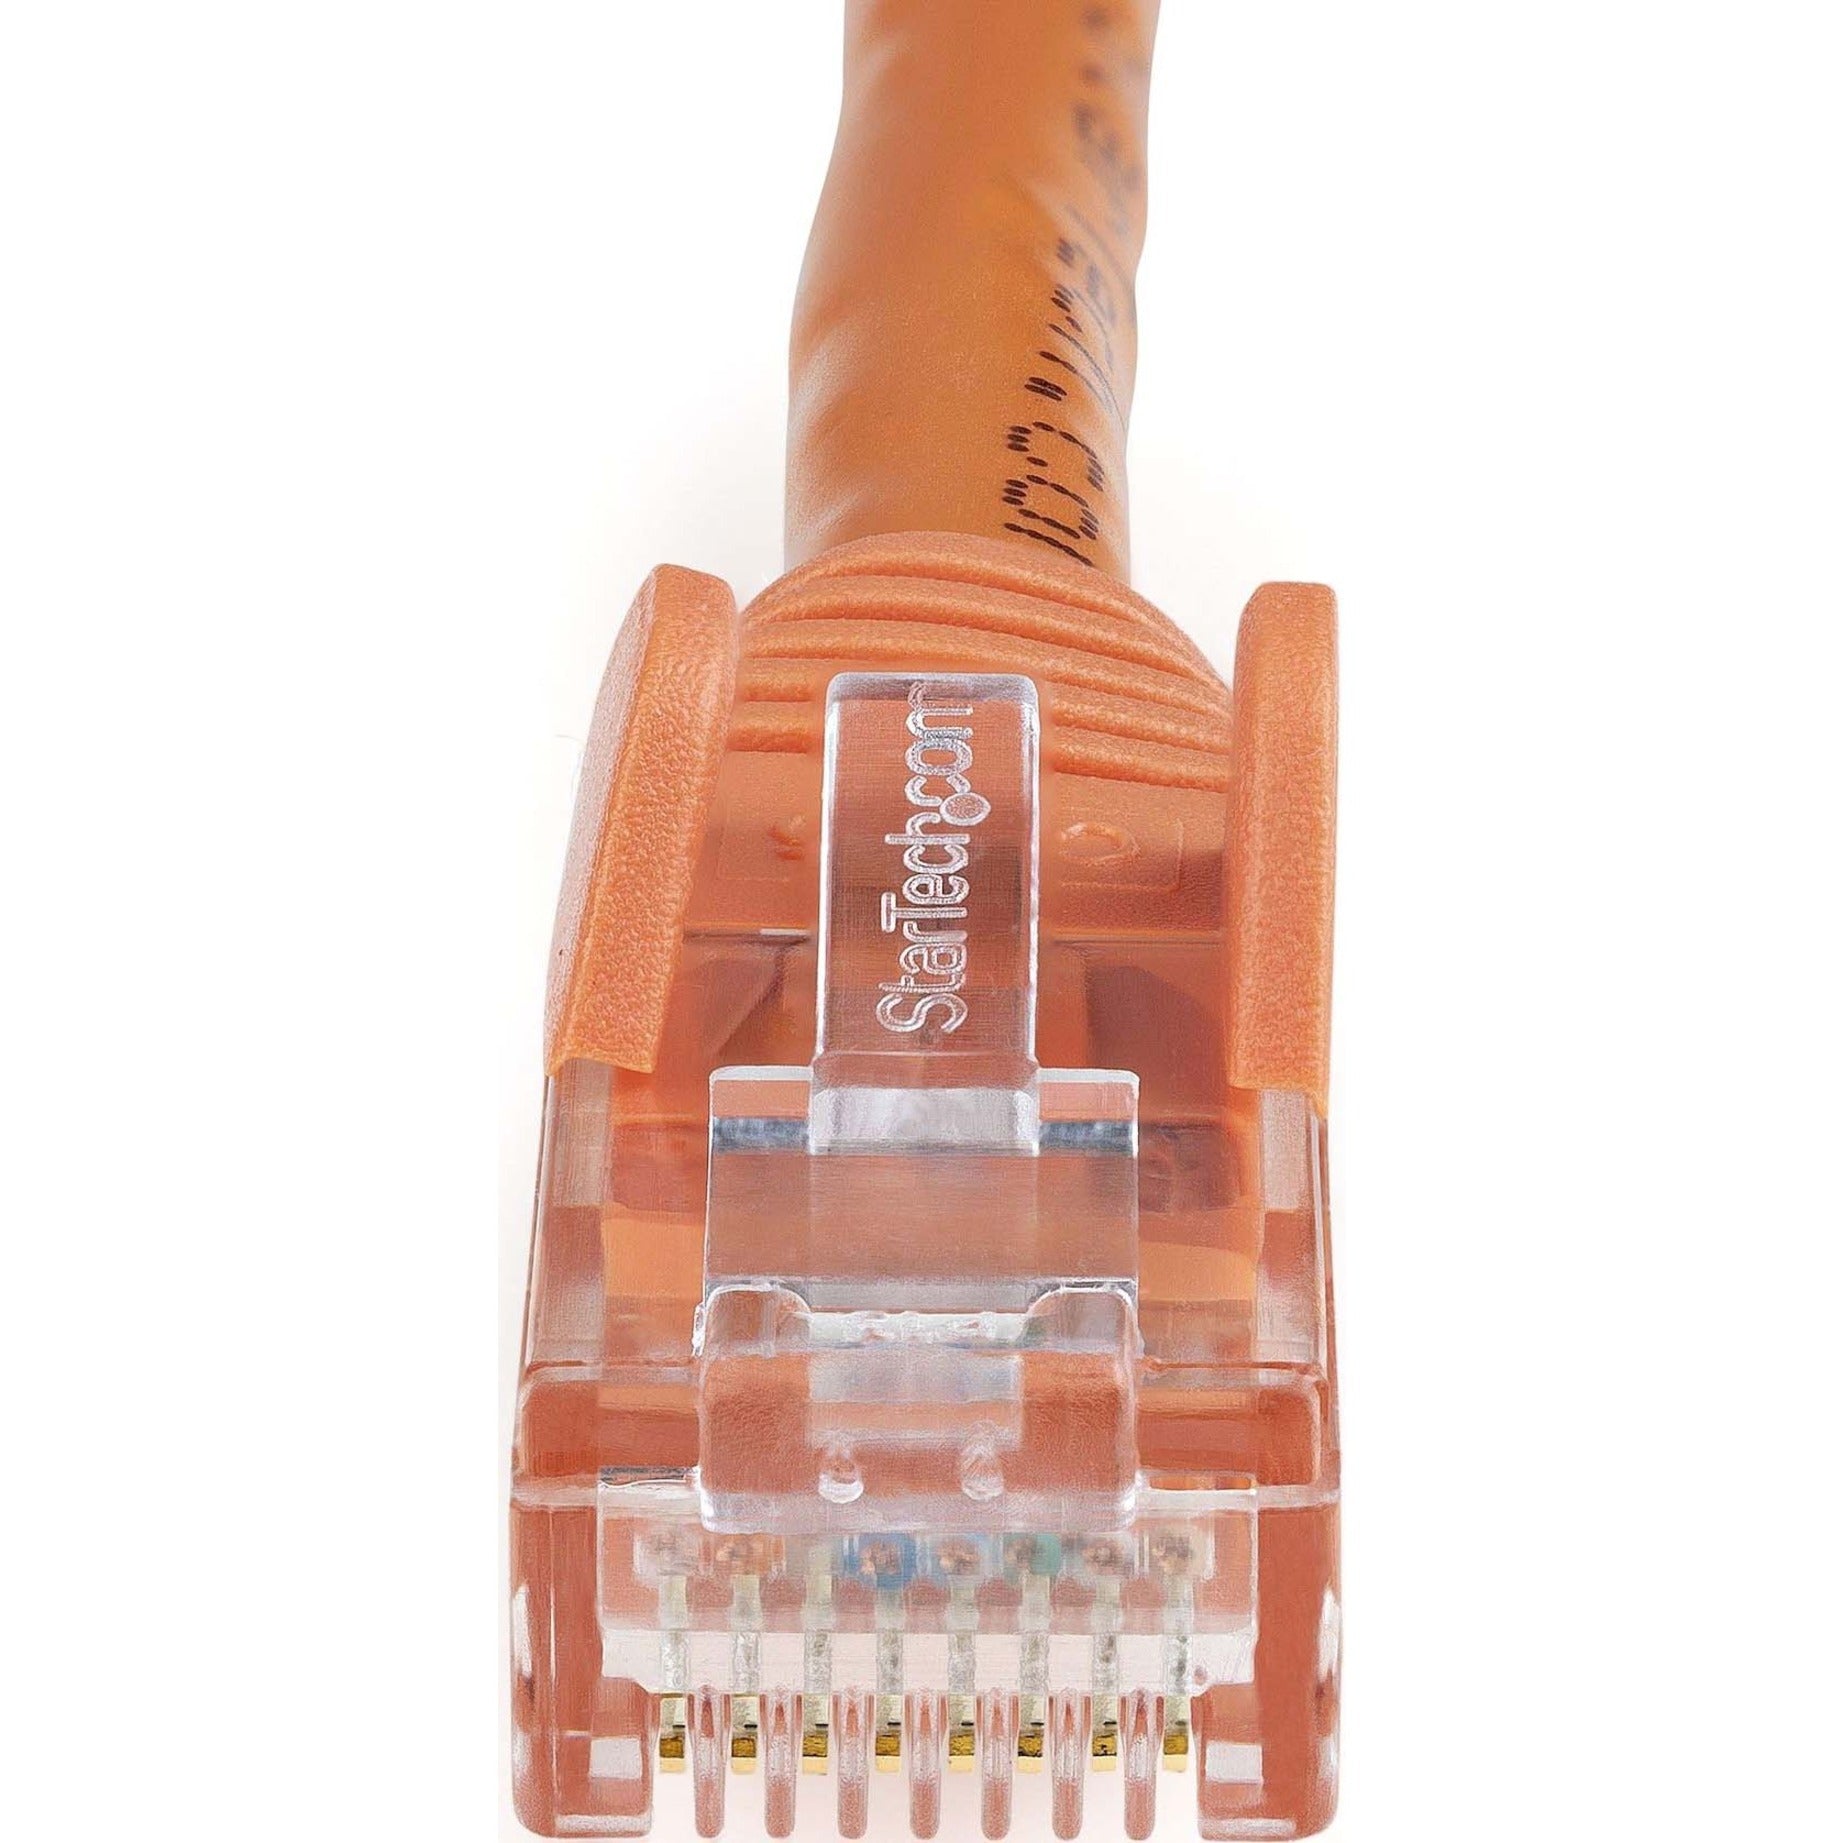 StarTech.com N6PATCH3OR 3 ft Orange Snagless Cat6 UTP Patch Cable Lifetime Warranty 10 Gbit/s Data Transfer Rate  StarTech.com N6PATCH3OR 3 pi Orange Snagless Cat6 UTP câble de patch garantie à vie débit de transfert de données de 10 Gbit/s